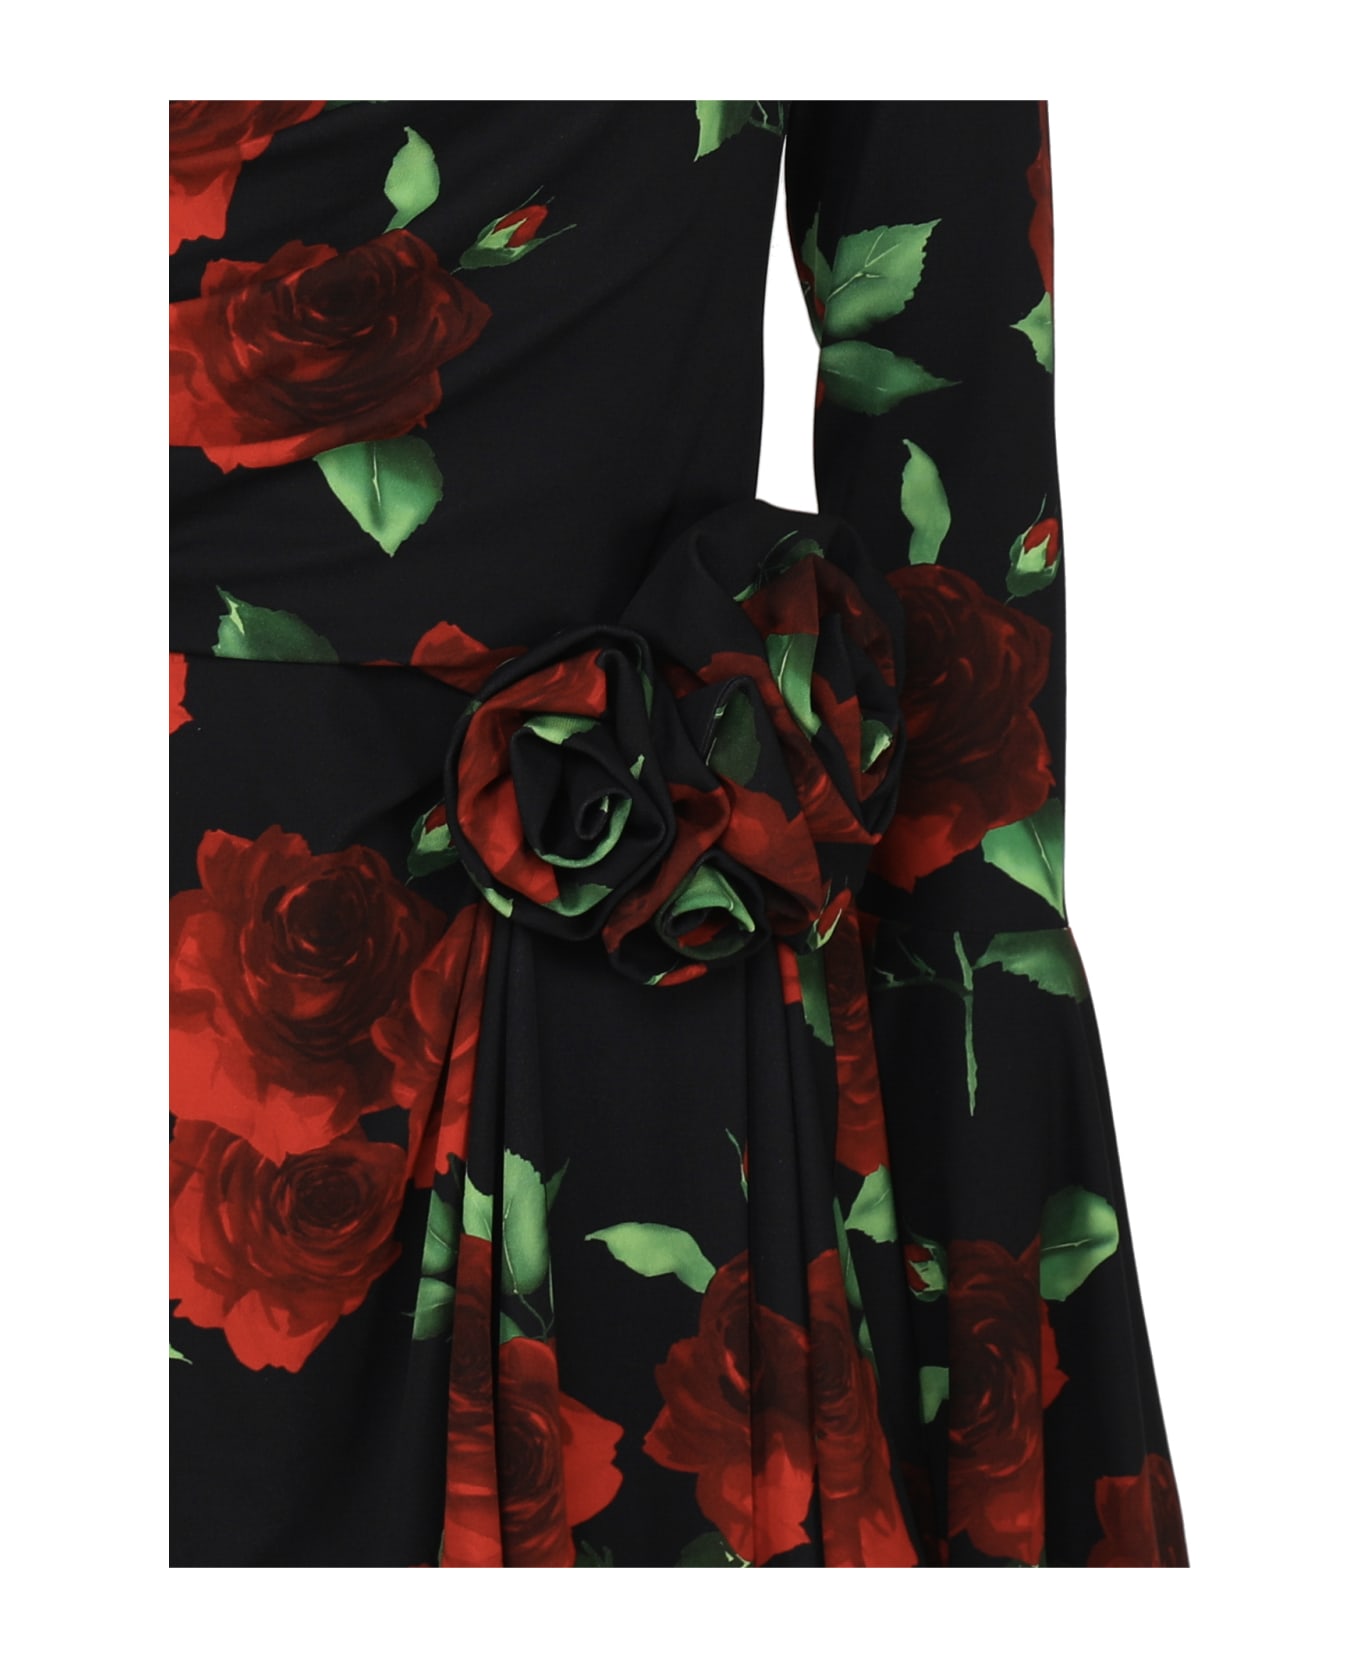 Magda Butrym Off Shoulder Bell Sleeve Mini Dress In Black Floral Print - Black